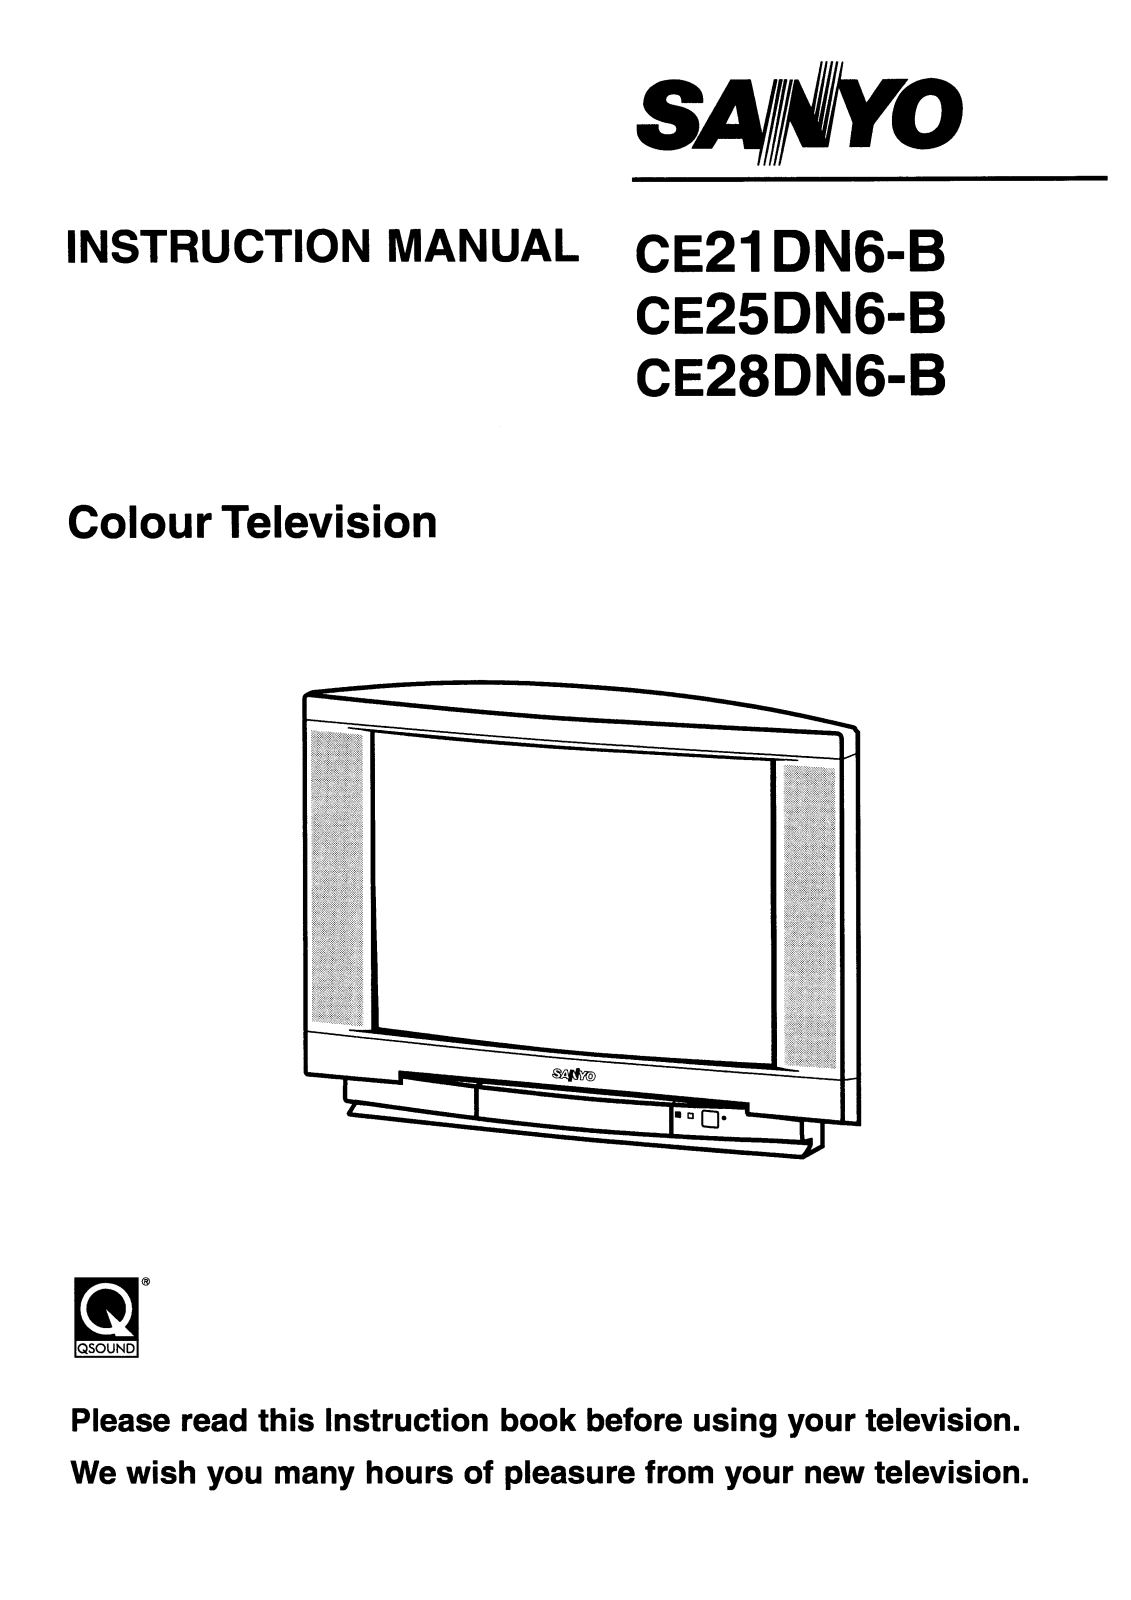 Sanyo CE21DN6-B, CE25DN6-B Instruction Manual